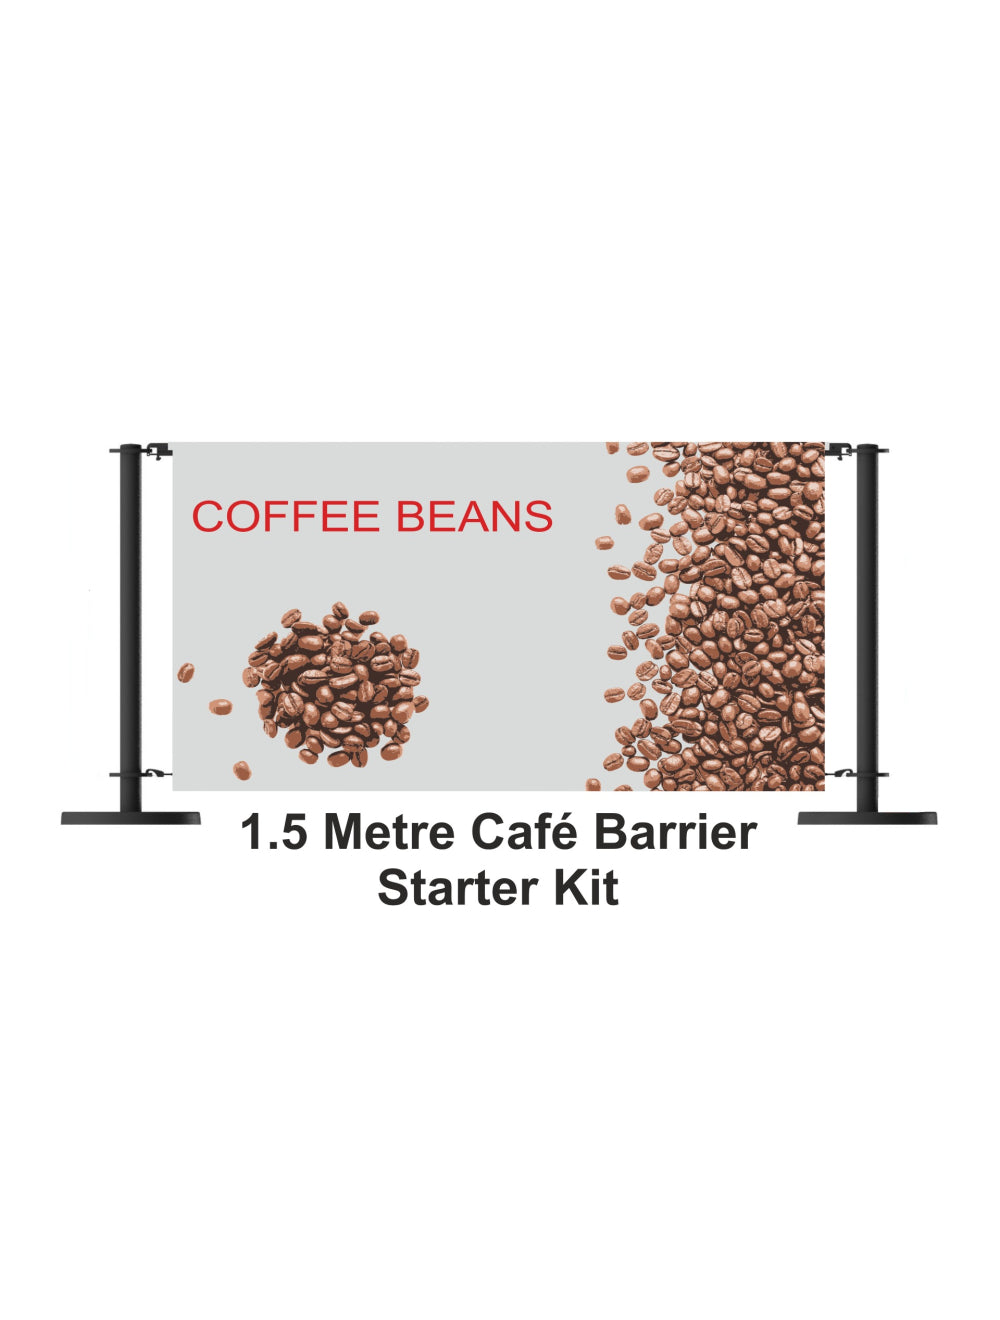 Kit de inicio de barrera de café de 1.5 metros